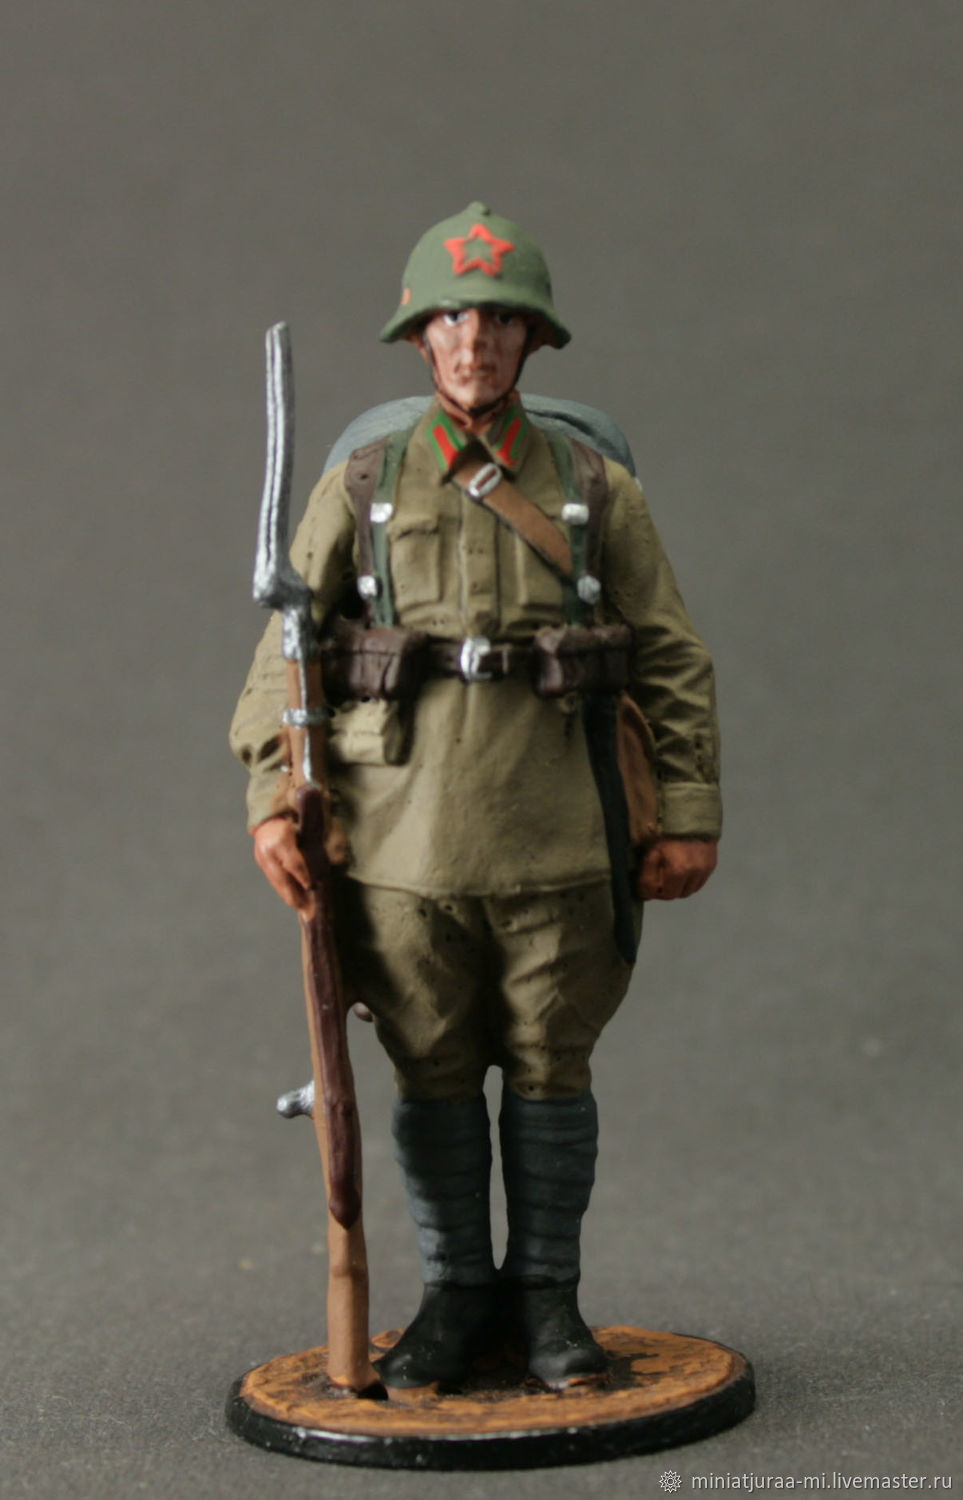 Tin Soldier EK Castings 54 mm German WWII Soldiers Set 1-3 figures 1:32 